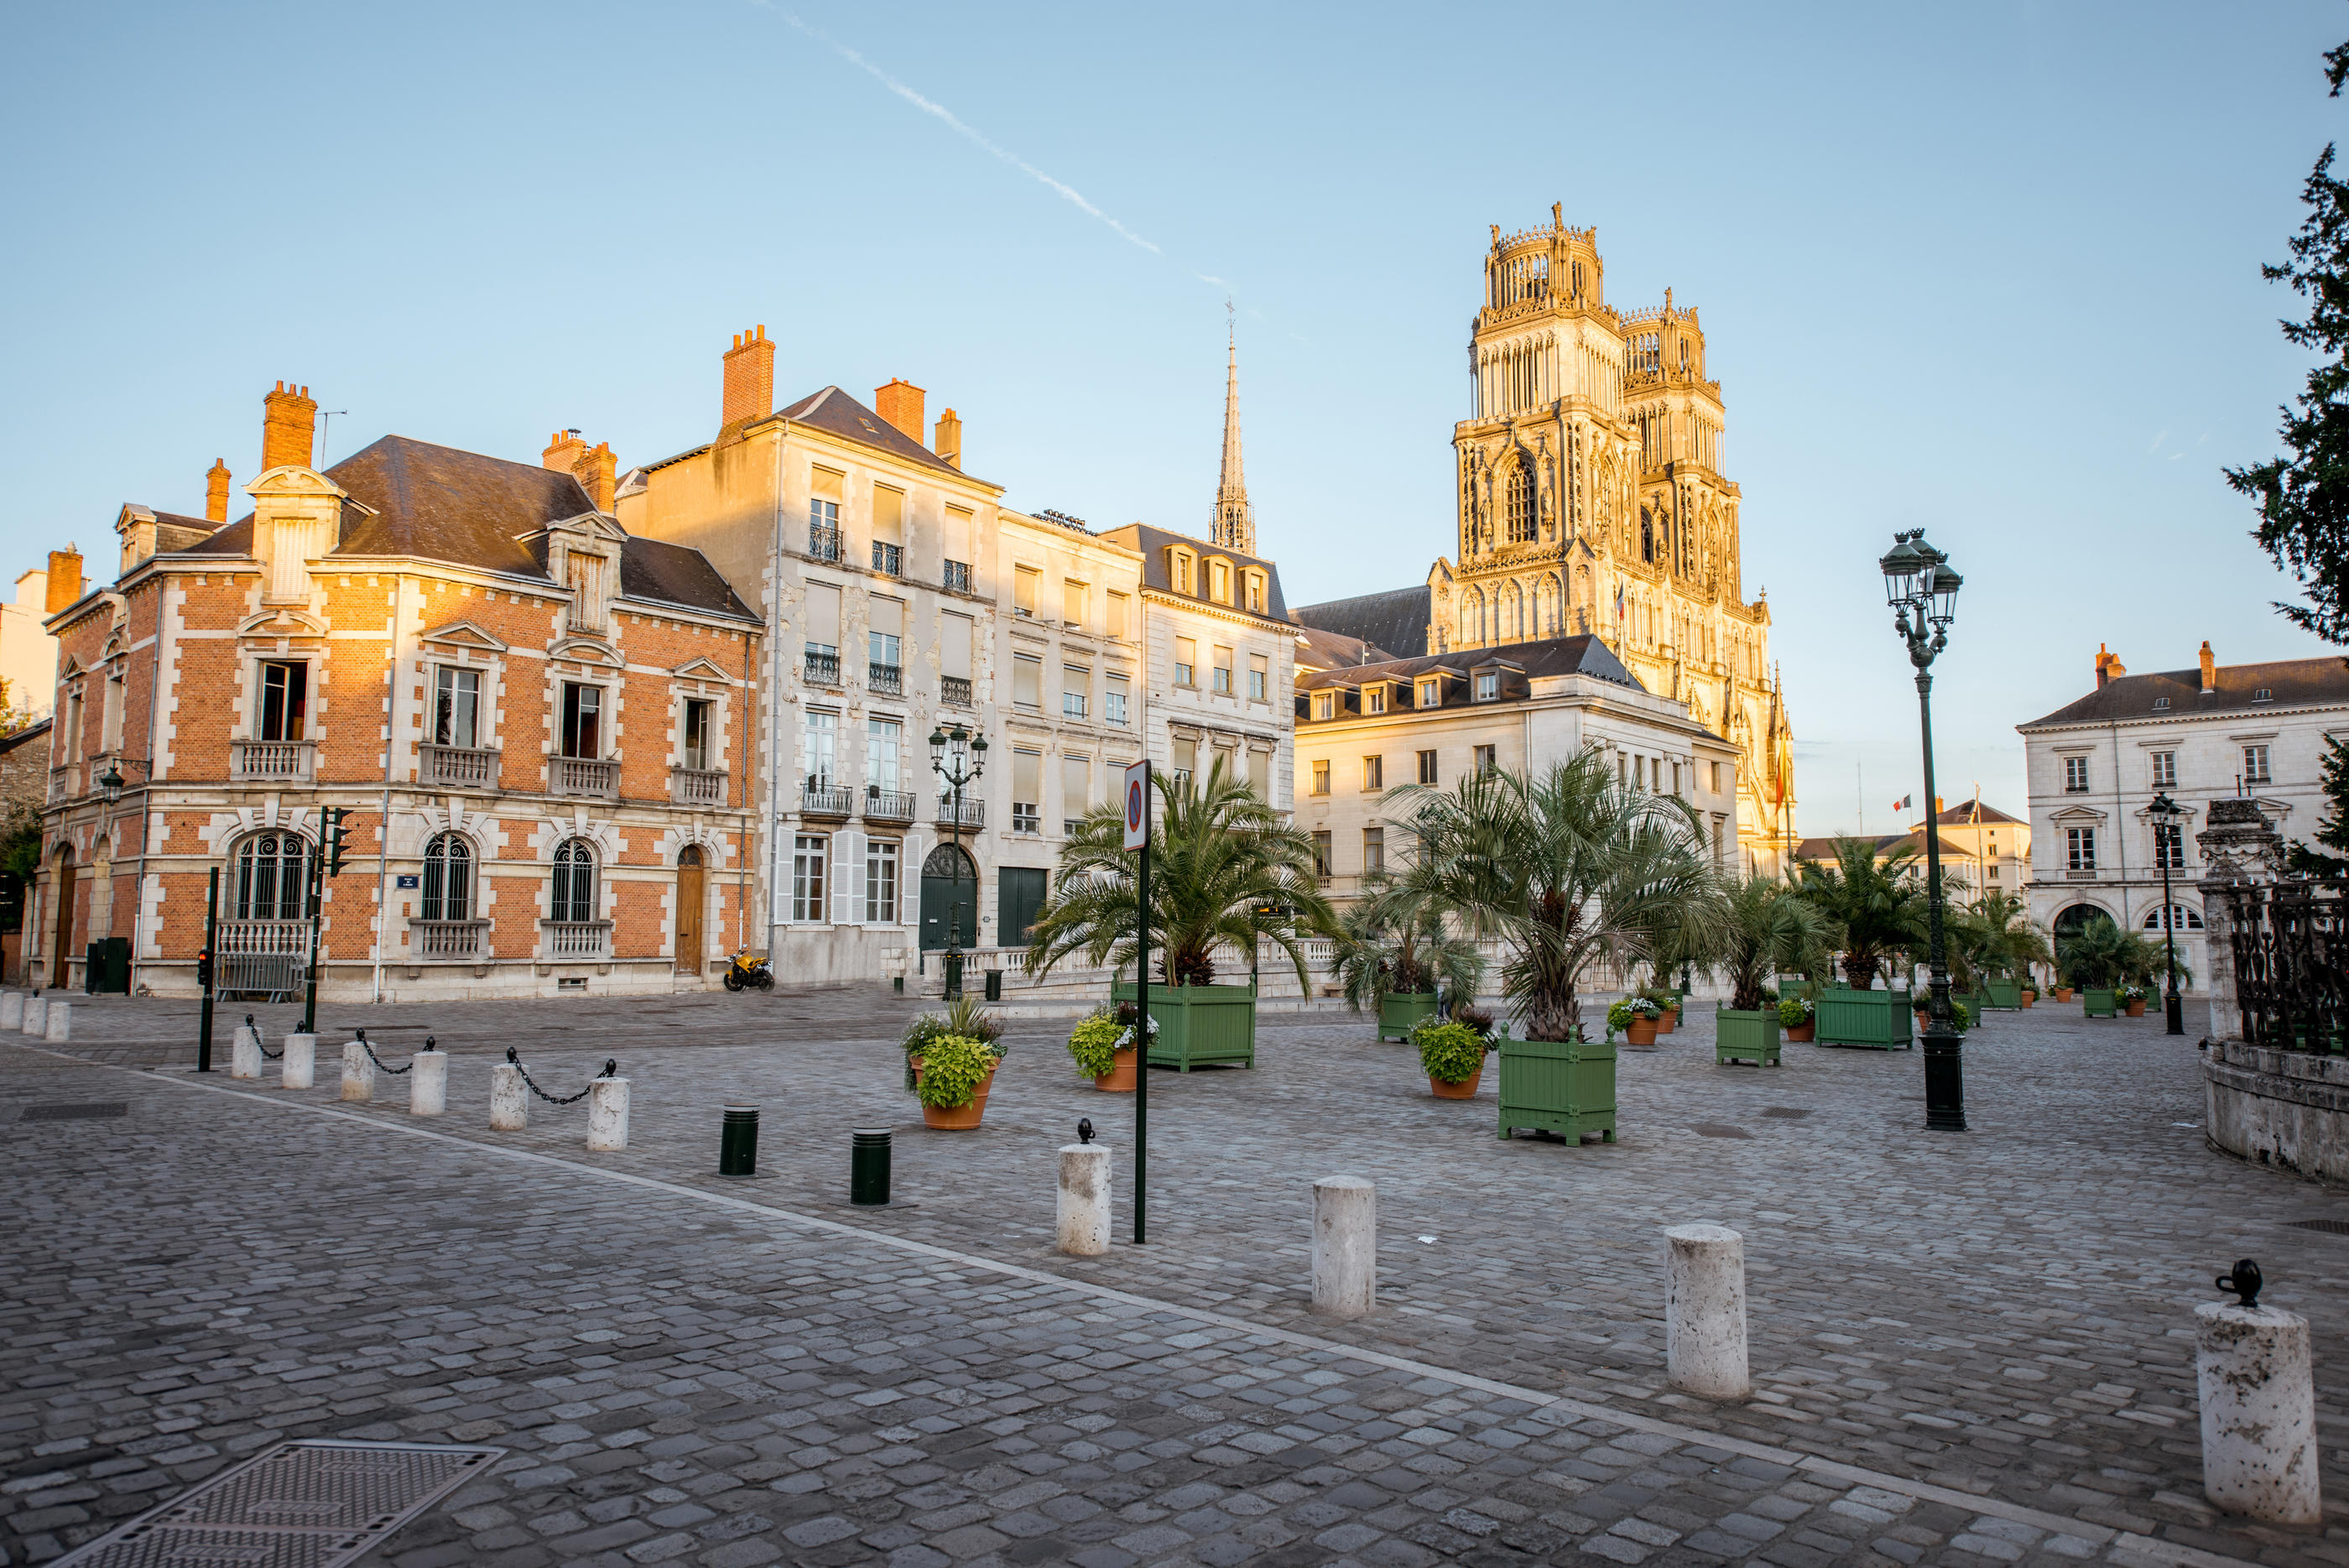 Avec 4,81 offres d’emploi en CDI pour 100 habitants, Orléans est la ville de France avec le marché de l’emploi le plus attractif. /RossHelen